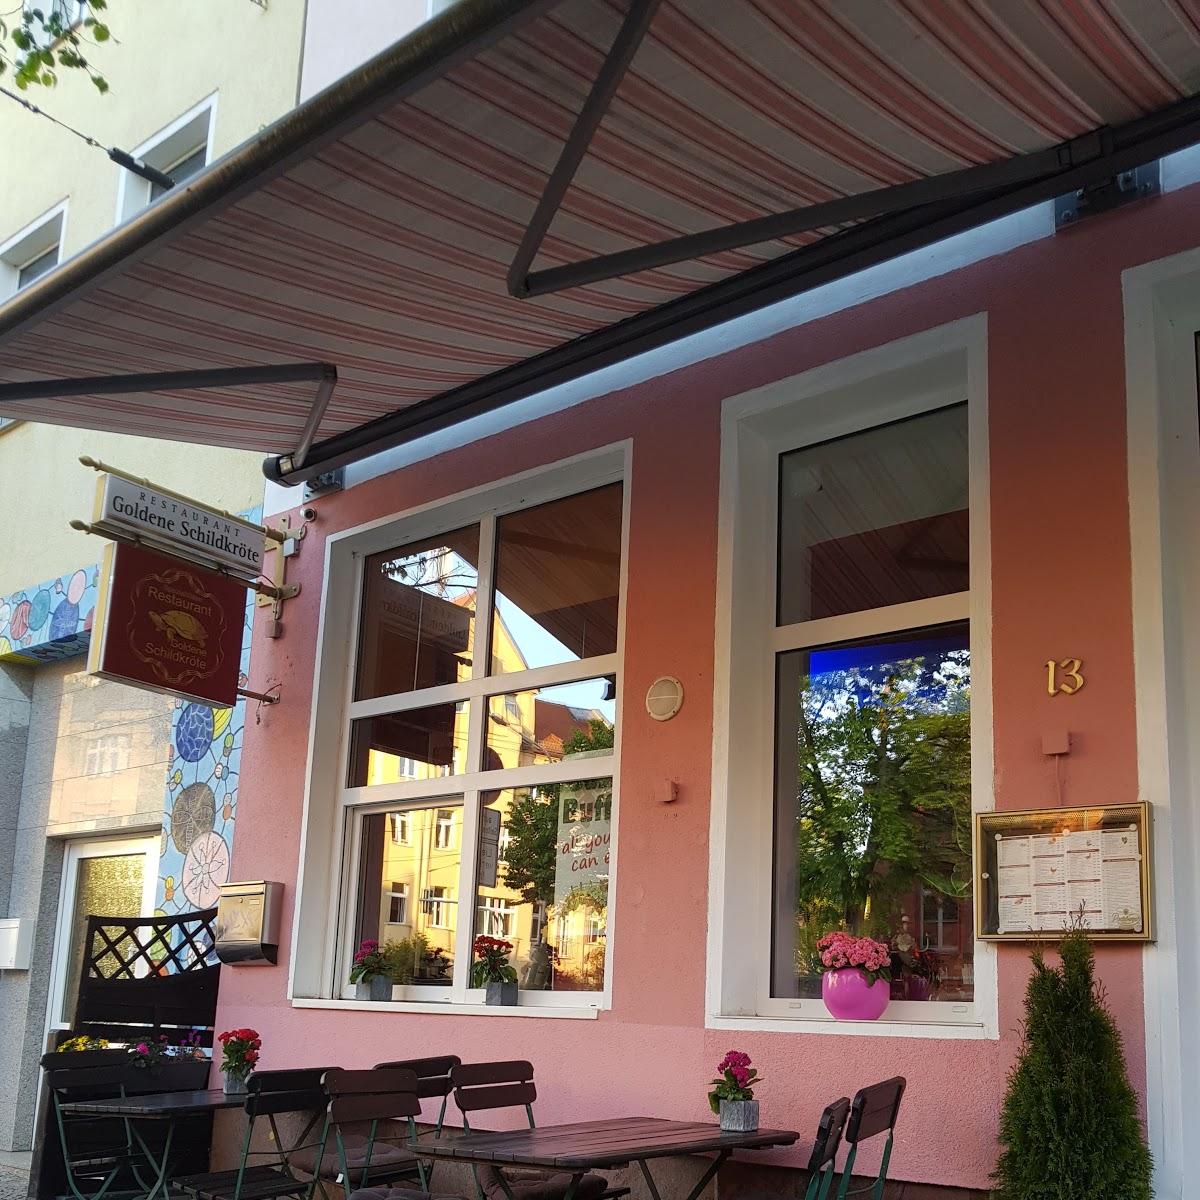 Restaurant "Goldene Schildkröte" in Halle (Saale)